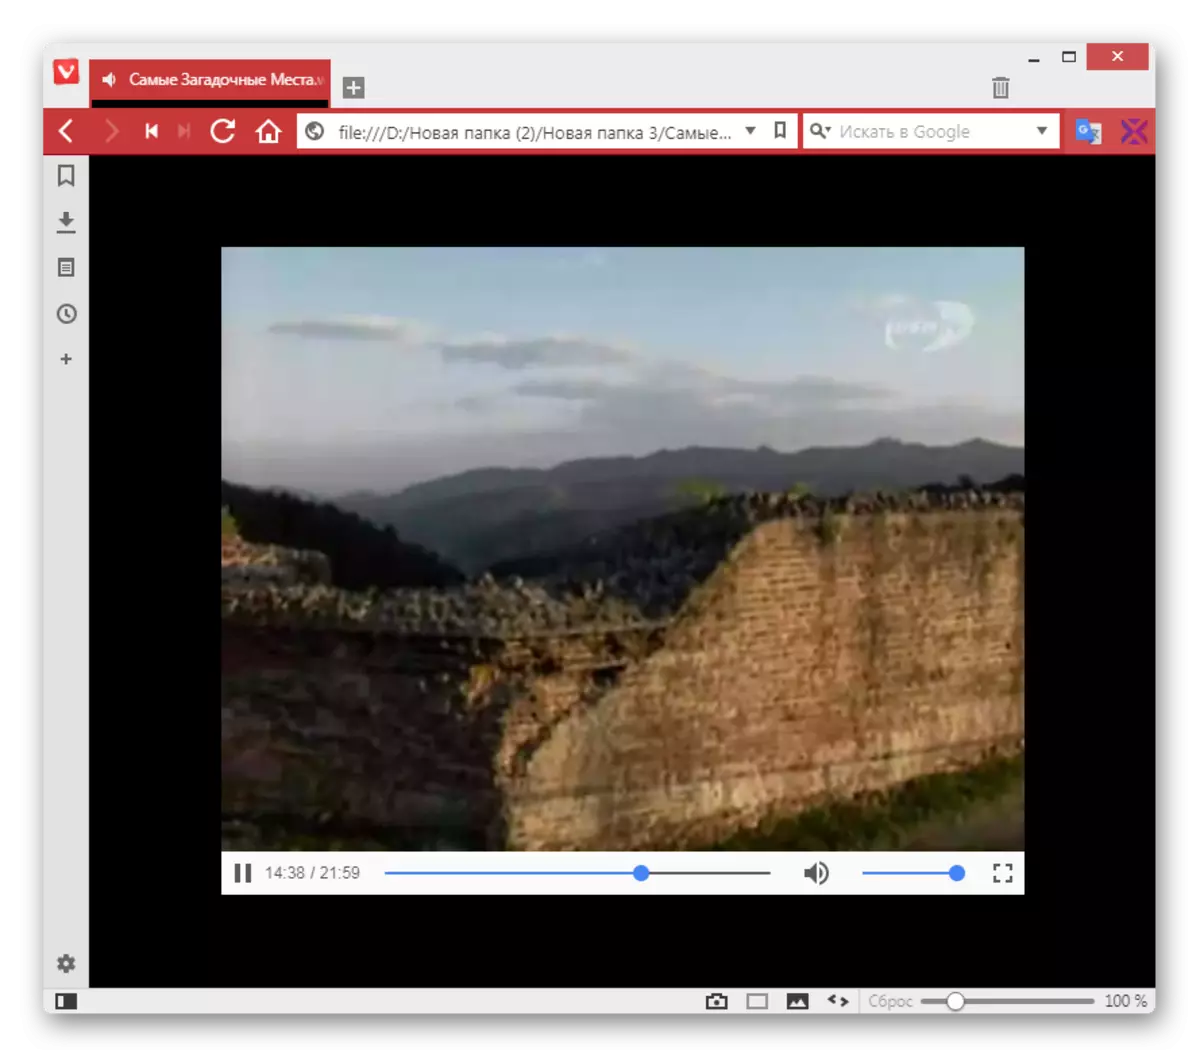 Ho bapala video form ka sebopeho sa Vivaldi Browser